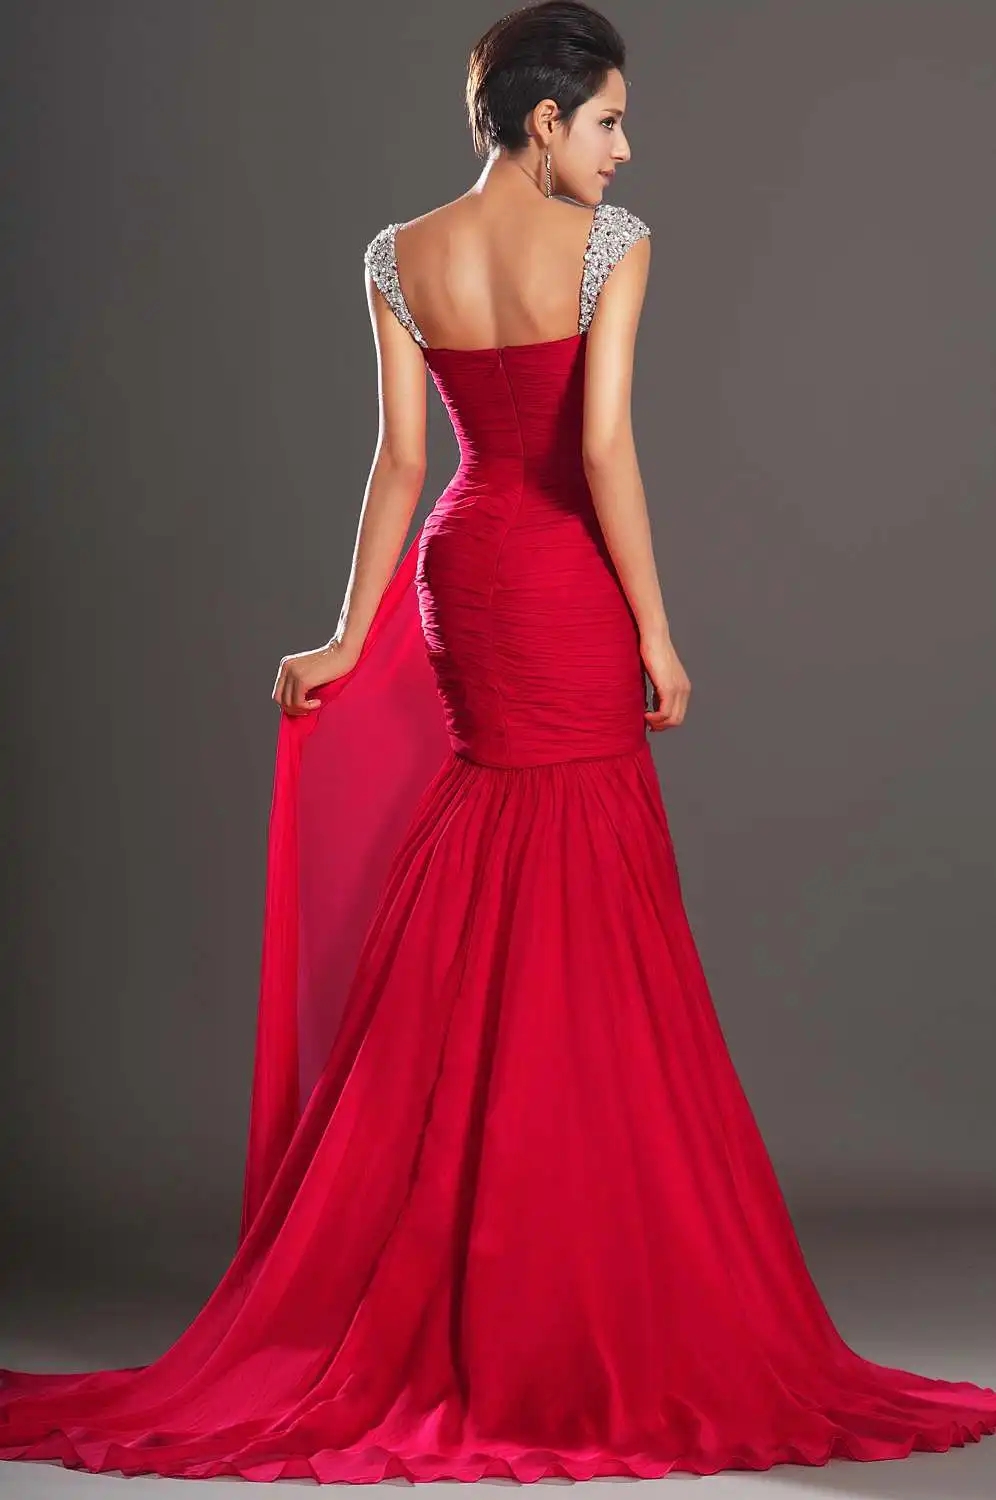 Красные вечерние платья Русалка с рукавами крылышками шифон бисером без спинки размера плюс длинное вечернее платье Выпускные платья Robe De Soiree